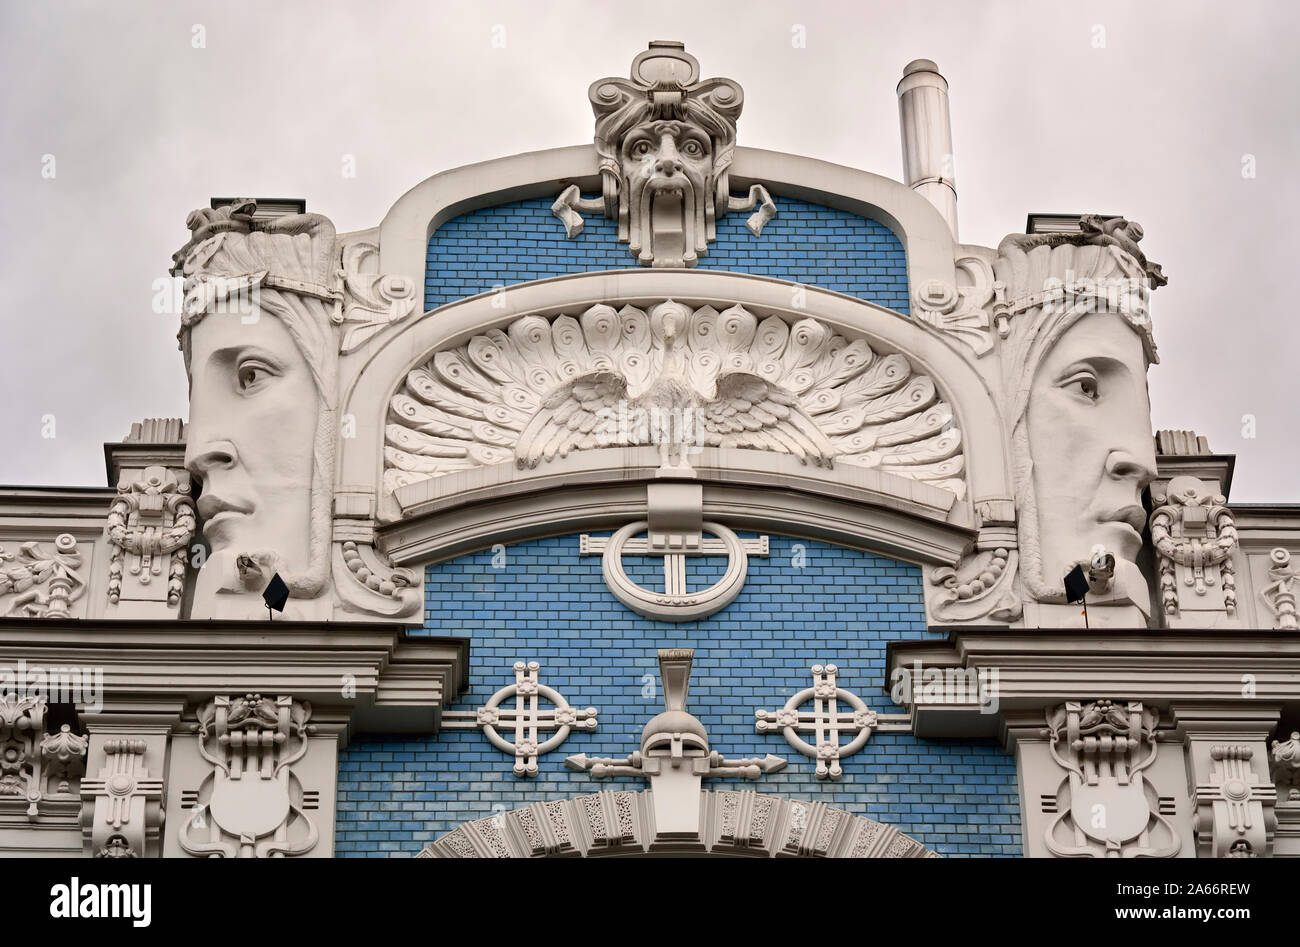 Art Nouveau Architektur (Jugendstil Architektur) von Michail Eisenstein. Ein Unesco Weltkulturerbe. Riga, Lettland Stockfoto